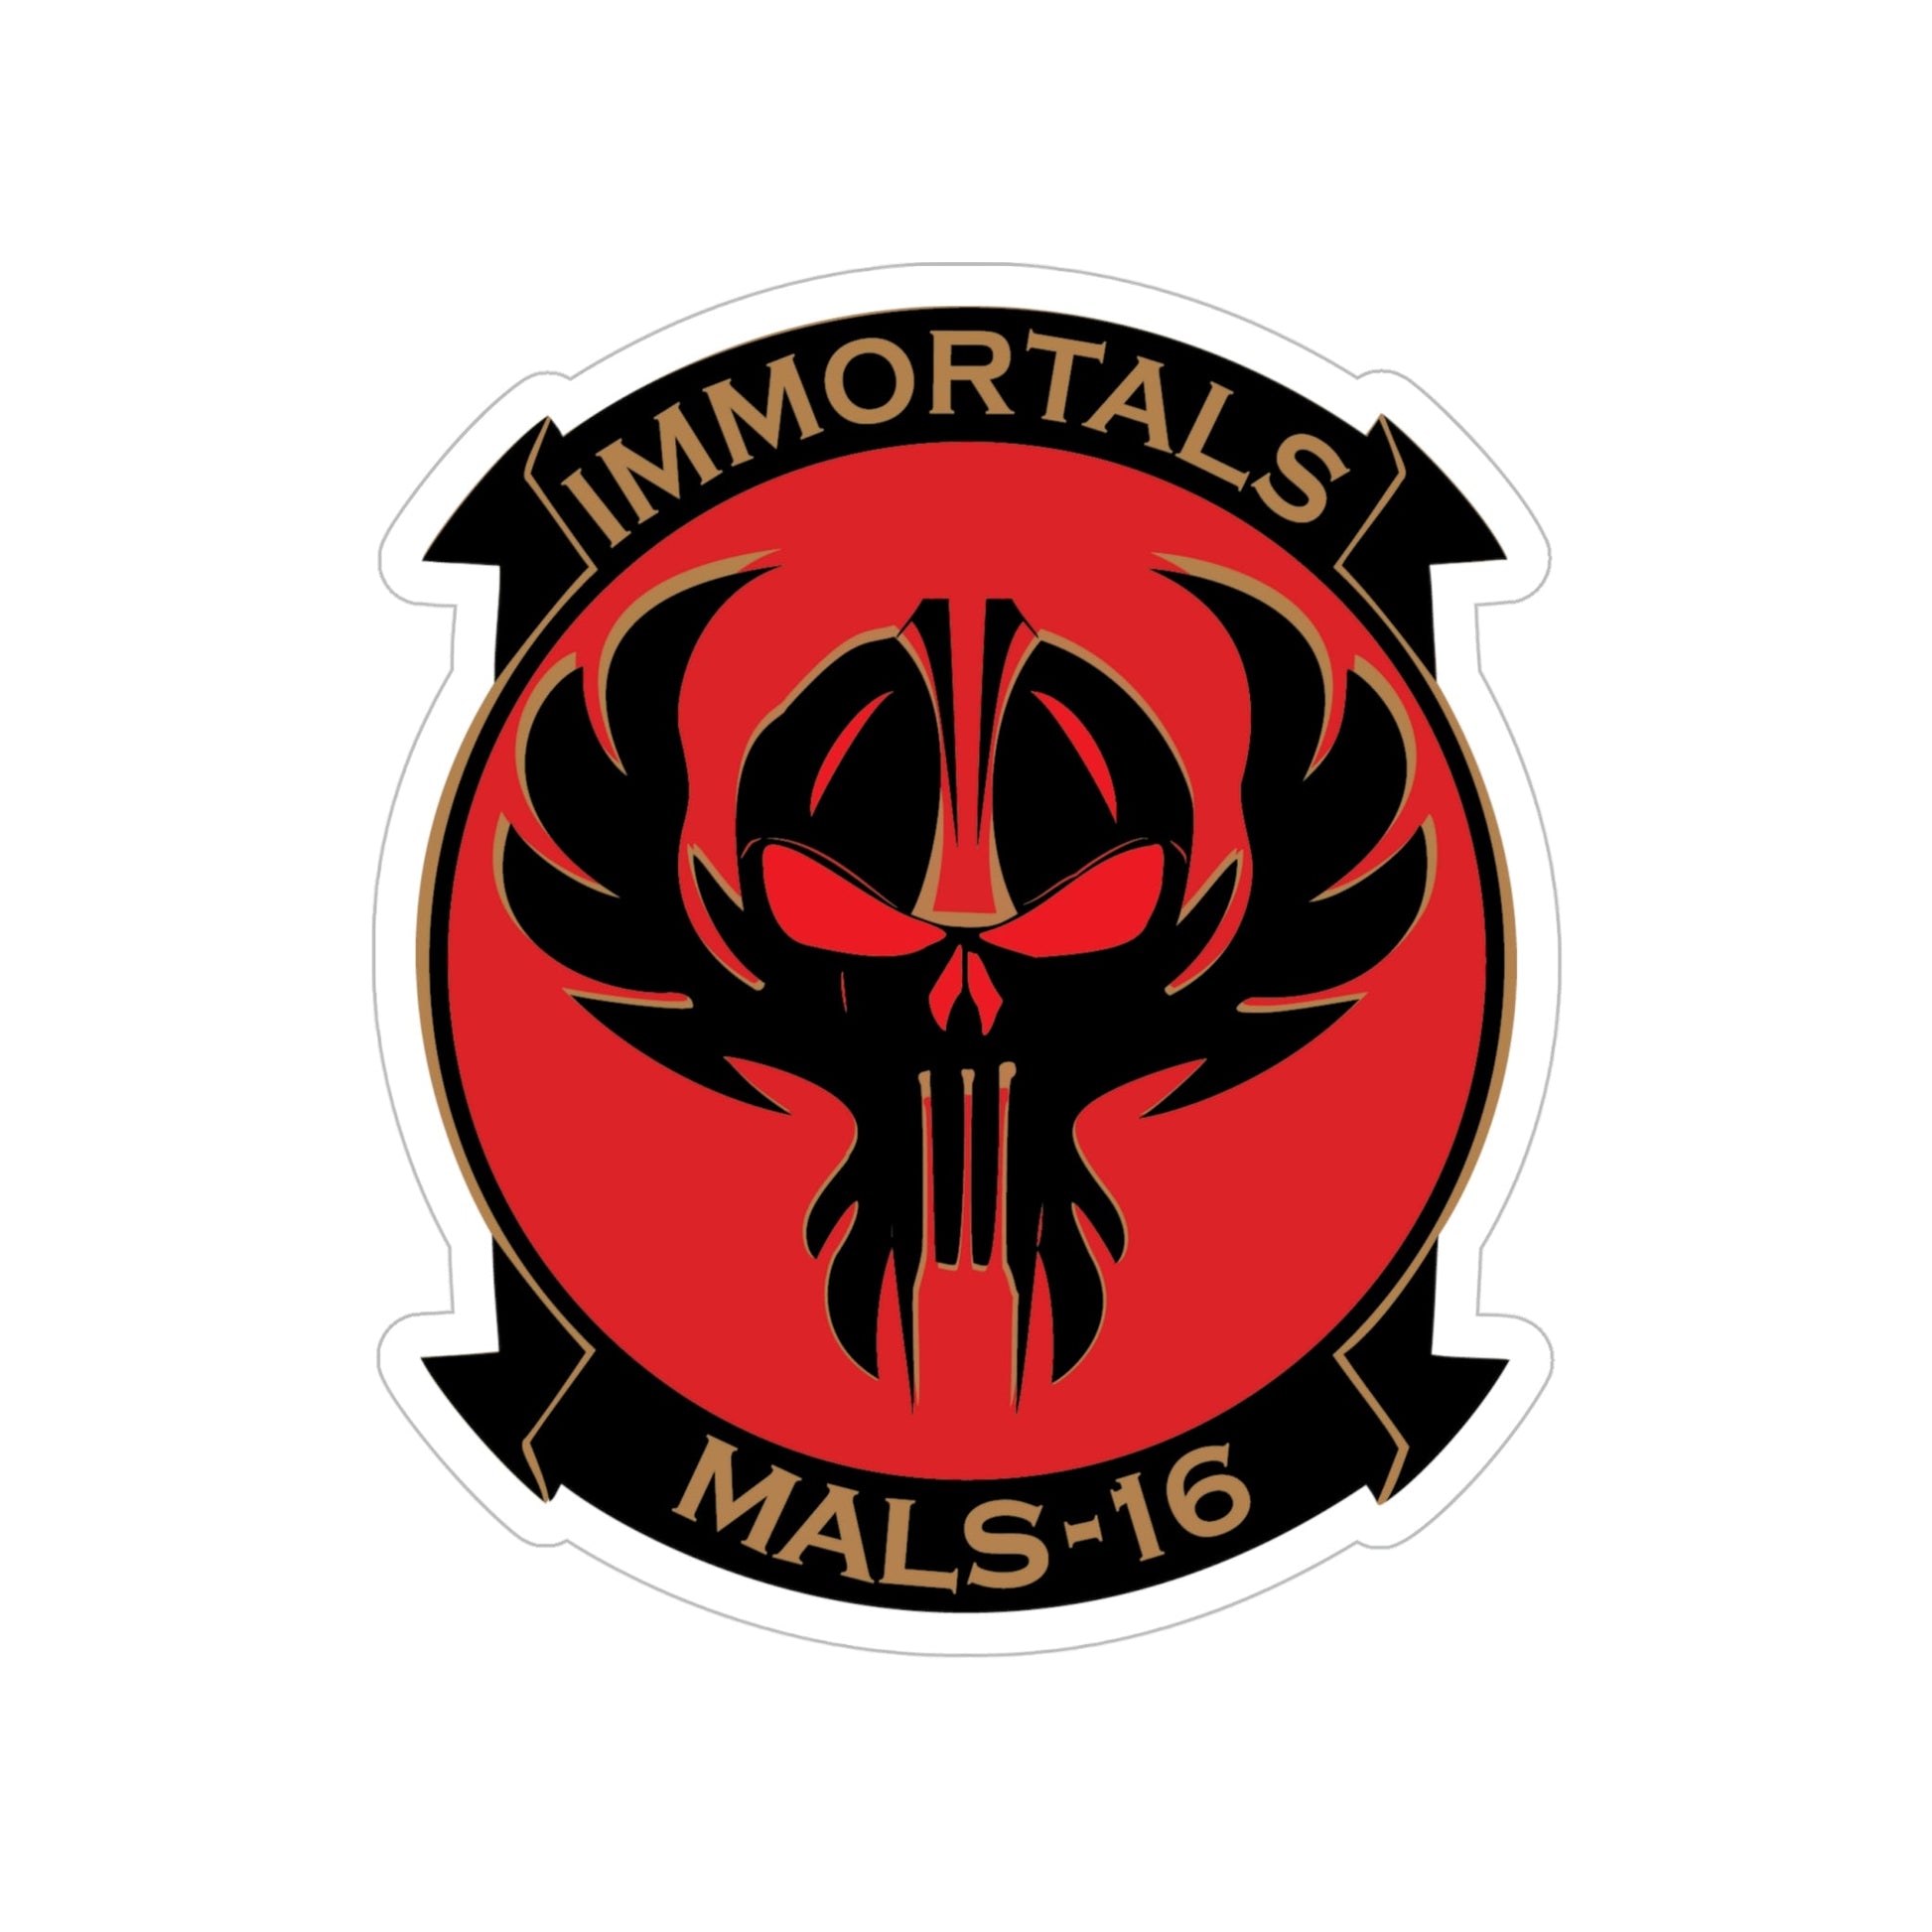 MALS 16 Immortals (USMC) Transparent STICKER Die-Cut Vinyl Decal-6 Inch-The Sticker Space